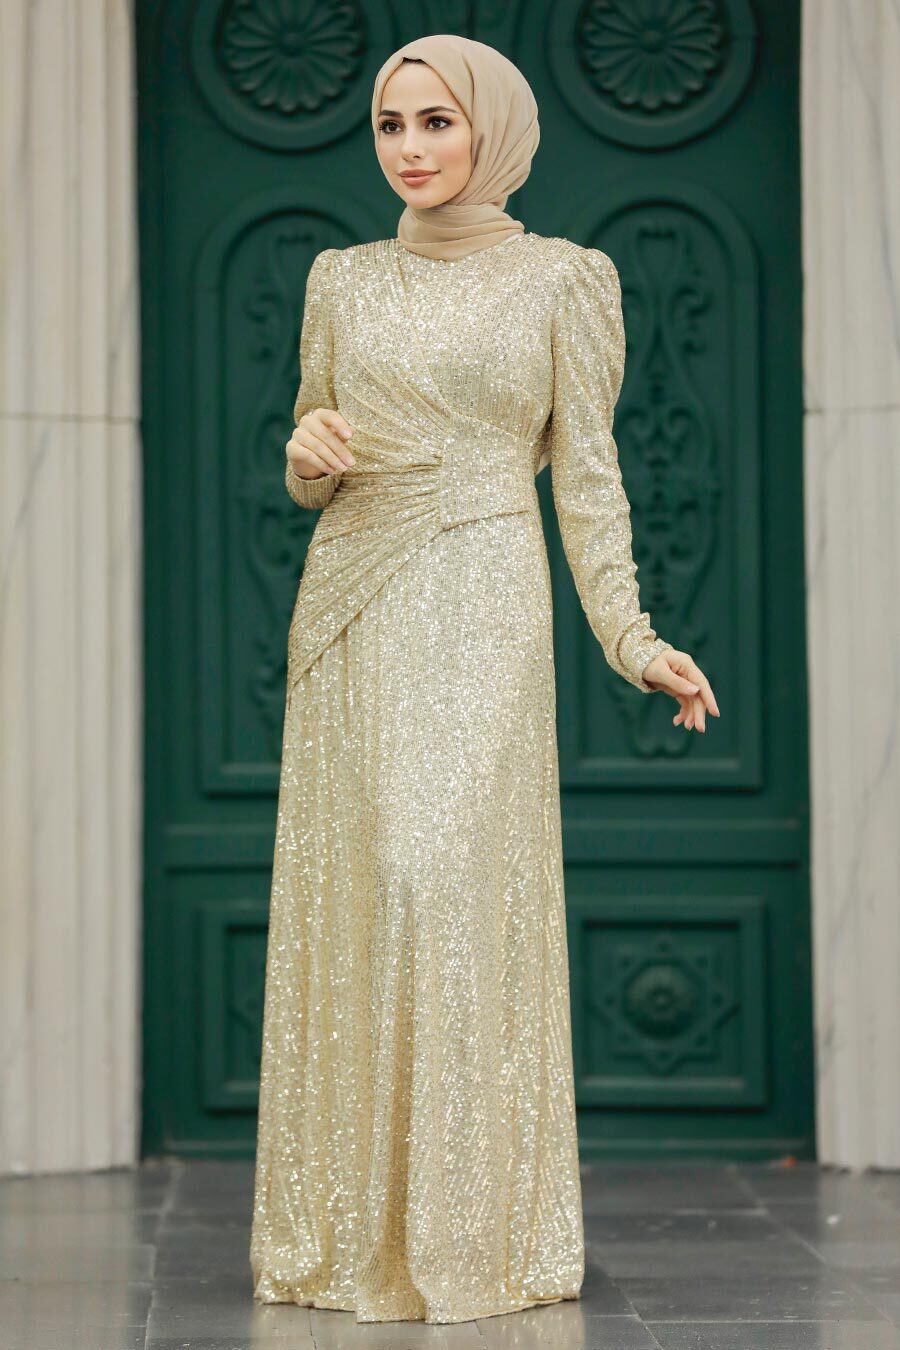 Tesettürlü Abiye Elbise - Pul Payetli Gold Tesettür Abiye Elbise 39471GOLD